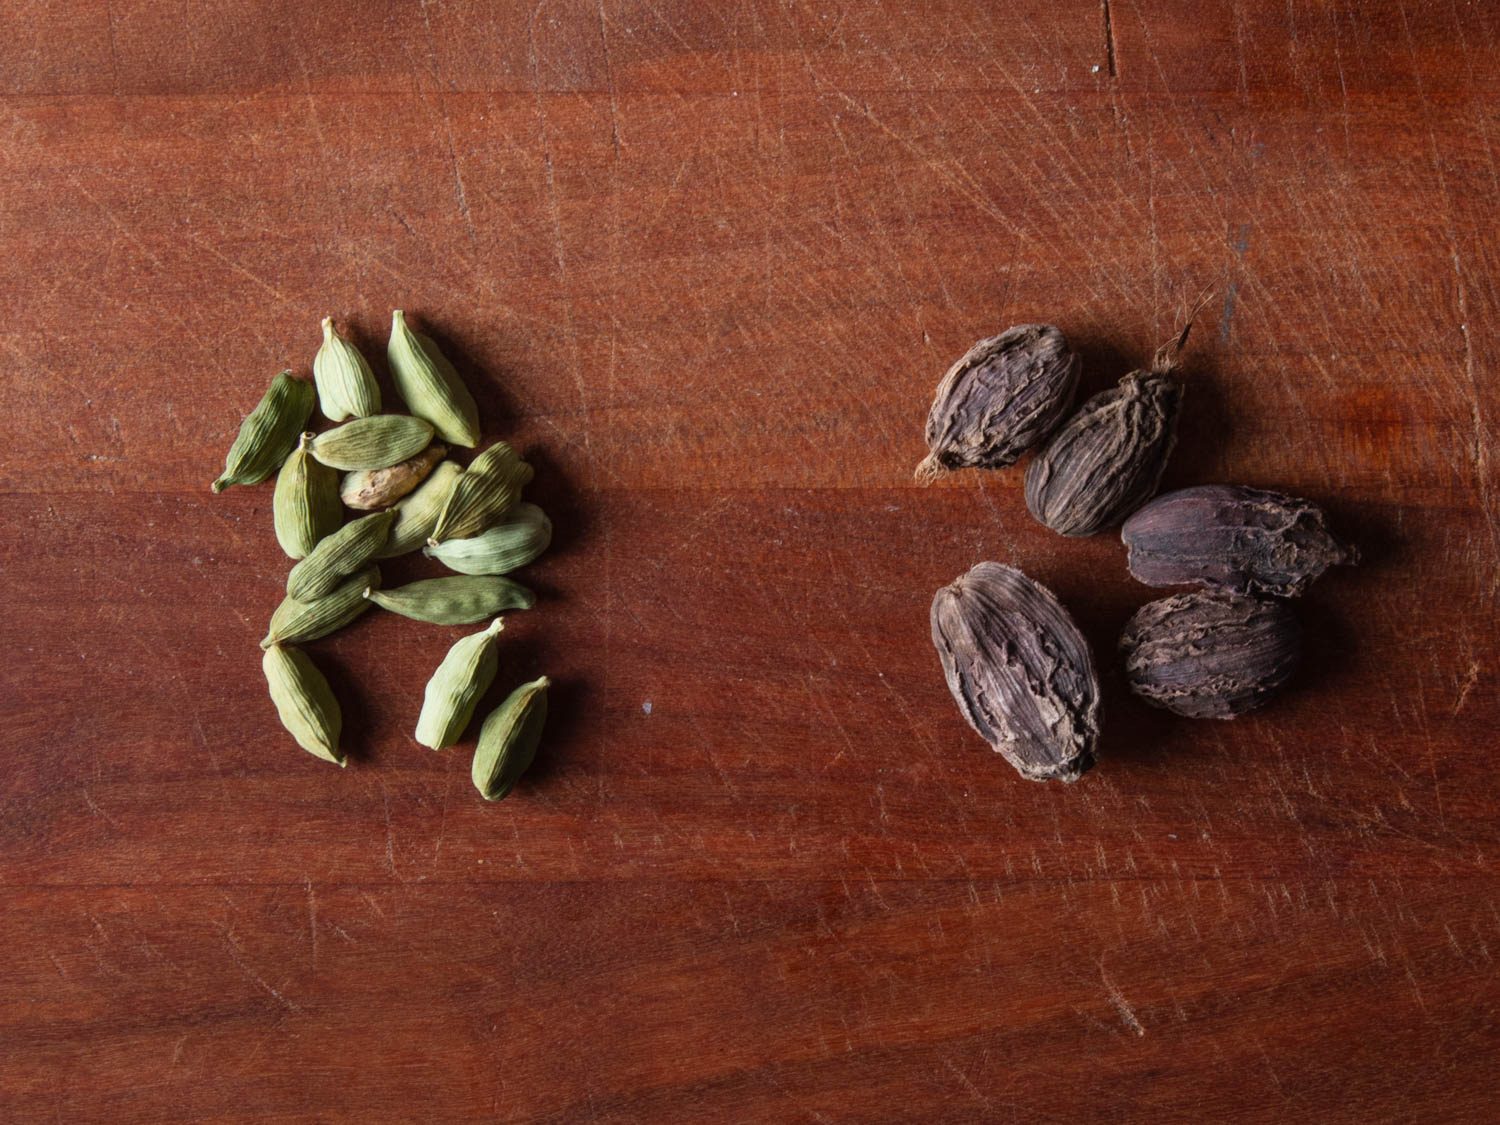 Comparaison côte à côte des gousses de cardamome verte (à gauche) et des gousses de cardamome brune (à droite)